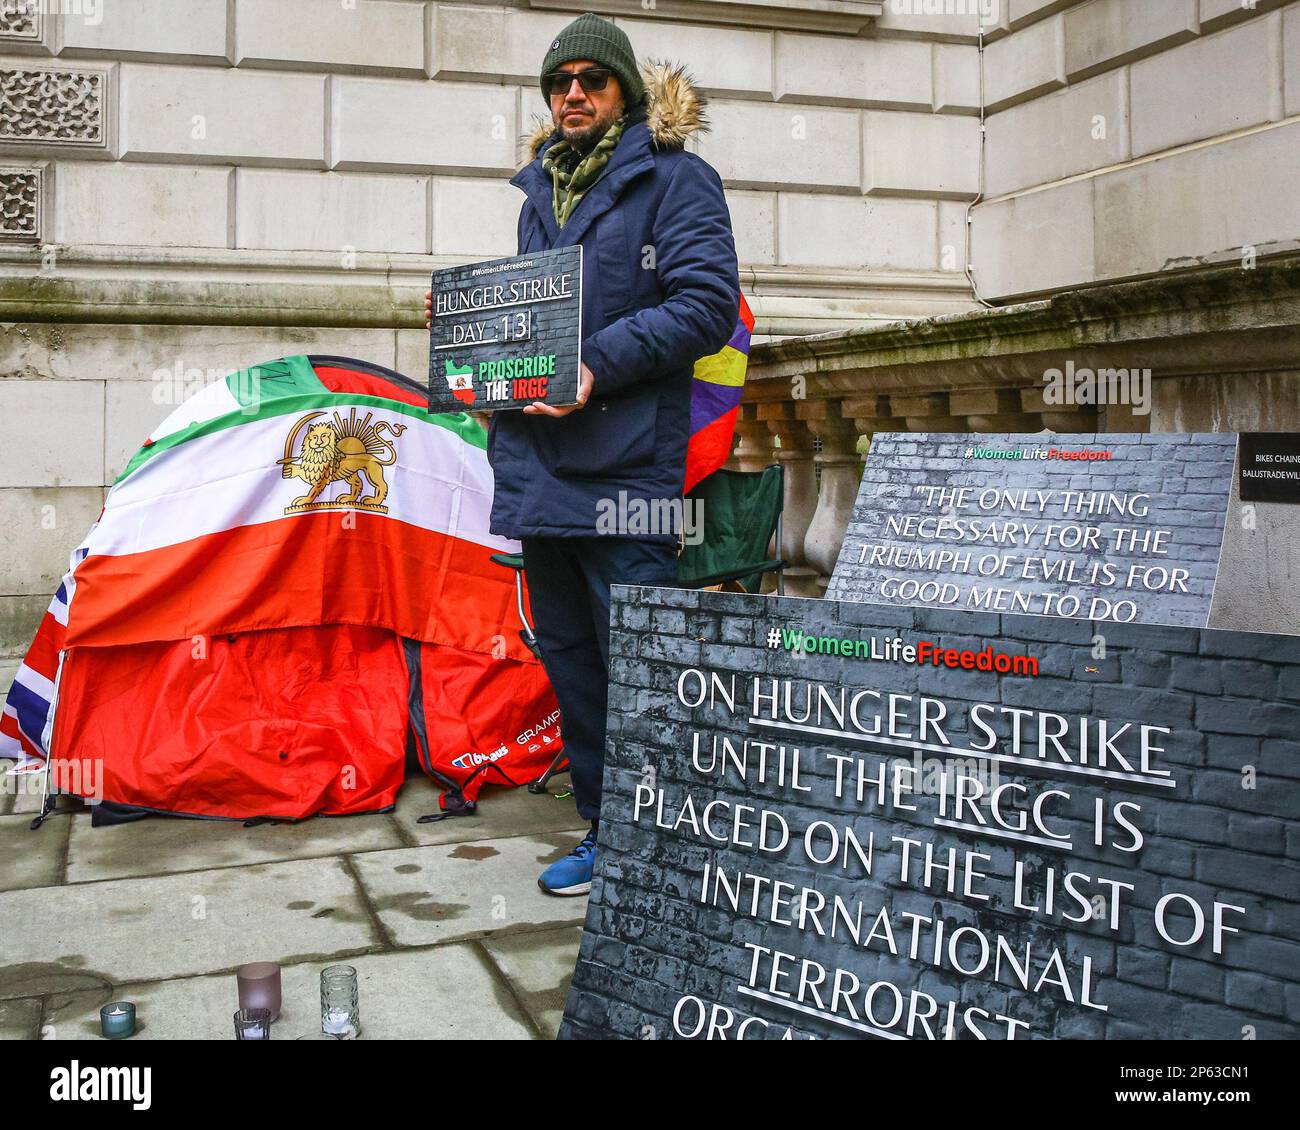 Londra, Regno Unito. 07th Mar, 2023. Vahid Beheshti, che dichiara di essere un giornalista, è visto il giorno 13 del suo sciopero della fame al di fuori dell'Ufficio degli Esteri britannico a Westminster. Beheshti chiede che l'IRGC (corpo della Guardia rivoluzionaria Islamica) sia inserito nella lista delle organizzazioni terroristiche internazionali del Regno Unito. L'IRGC, un ramo dell'esercito iraniano, è considerato sempre più oppressivo e considerato un'organizzazione terroristica dagli Stati Uniti dal 2019, mentre l'UE ha recentemente approvato un emendamento che chiede agli stati membri di fare simili. Credit: Imageplotter/Alamy Live News Foto Stock